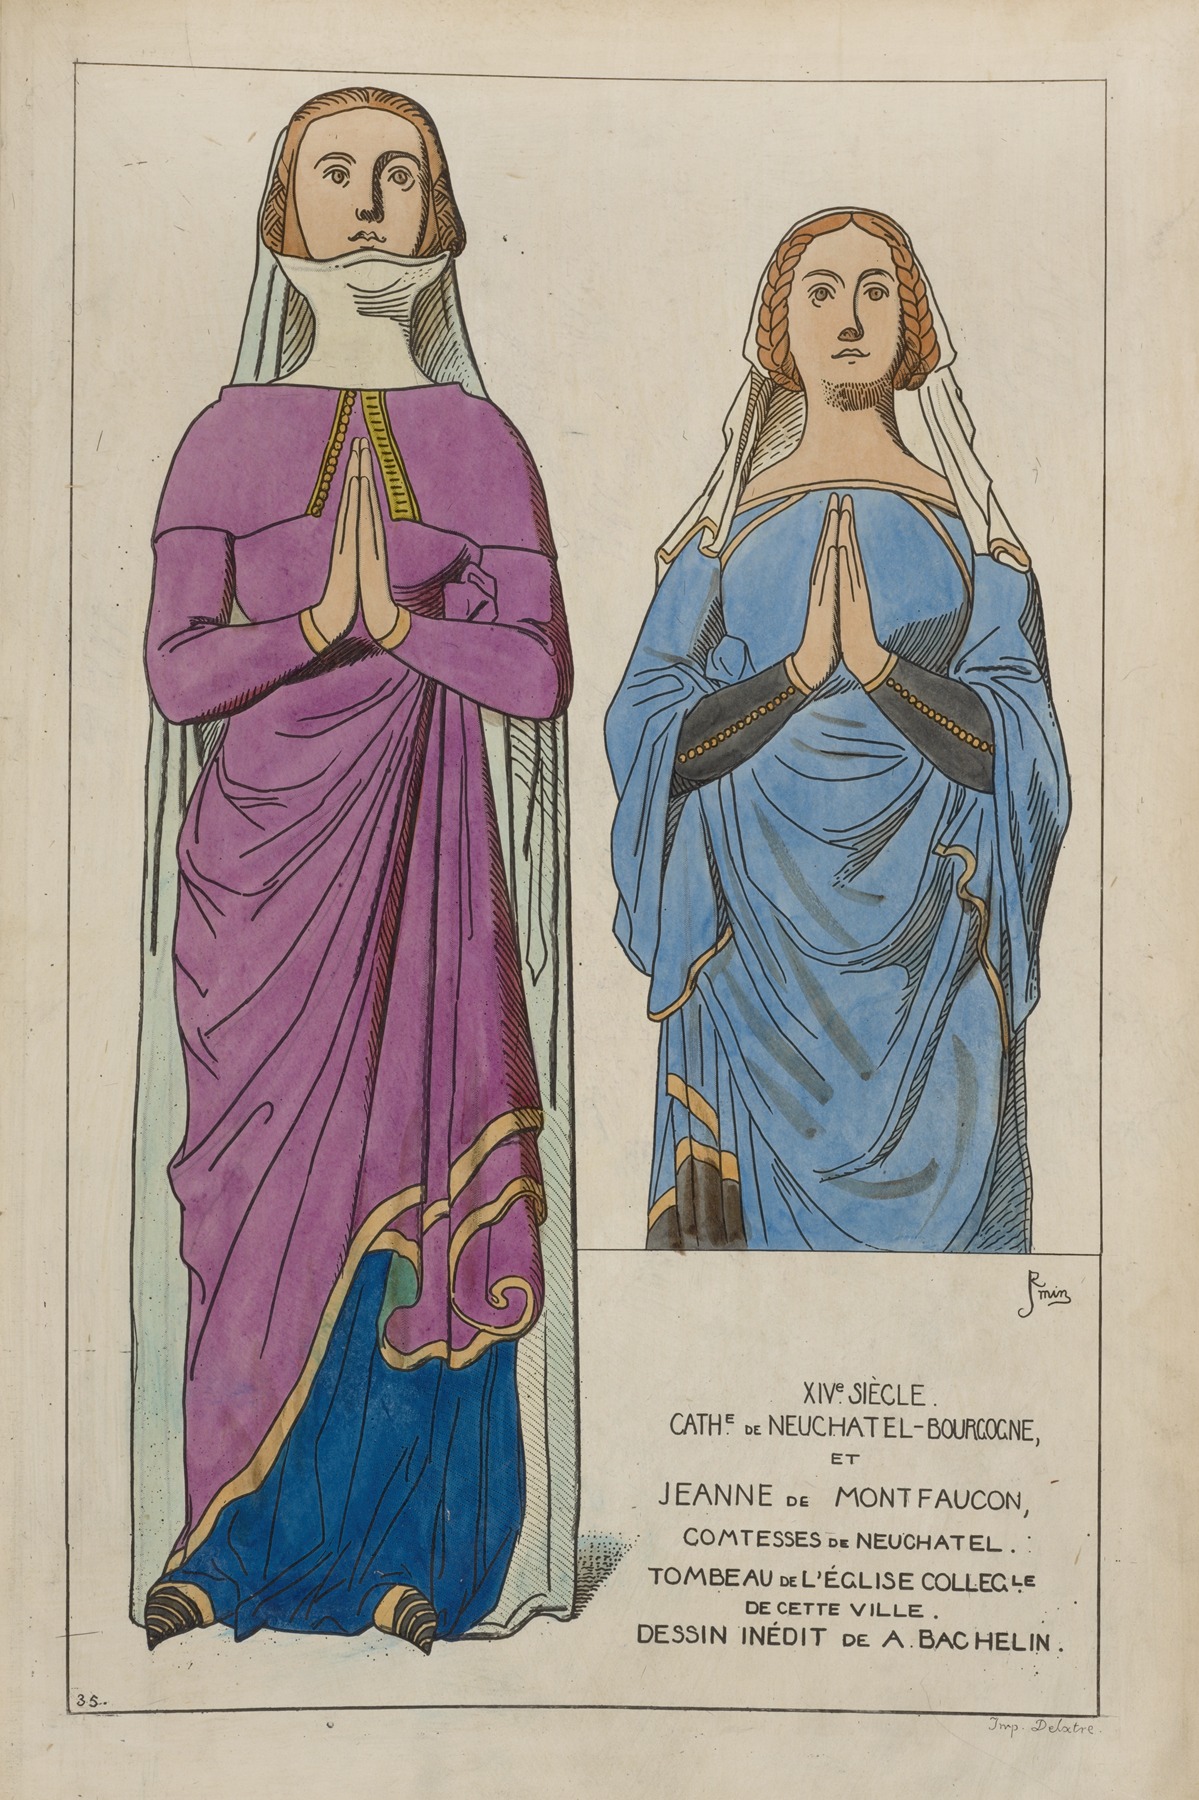 Raphaël Jacquemin - XIVe siècle. Cath[edrale] de Neuchatel-Bourgogne, et Jeanne de Montfaucon, comtesses de Neuchatel